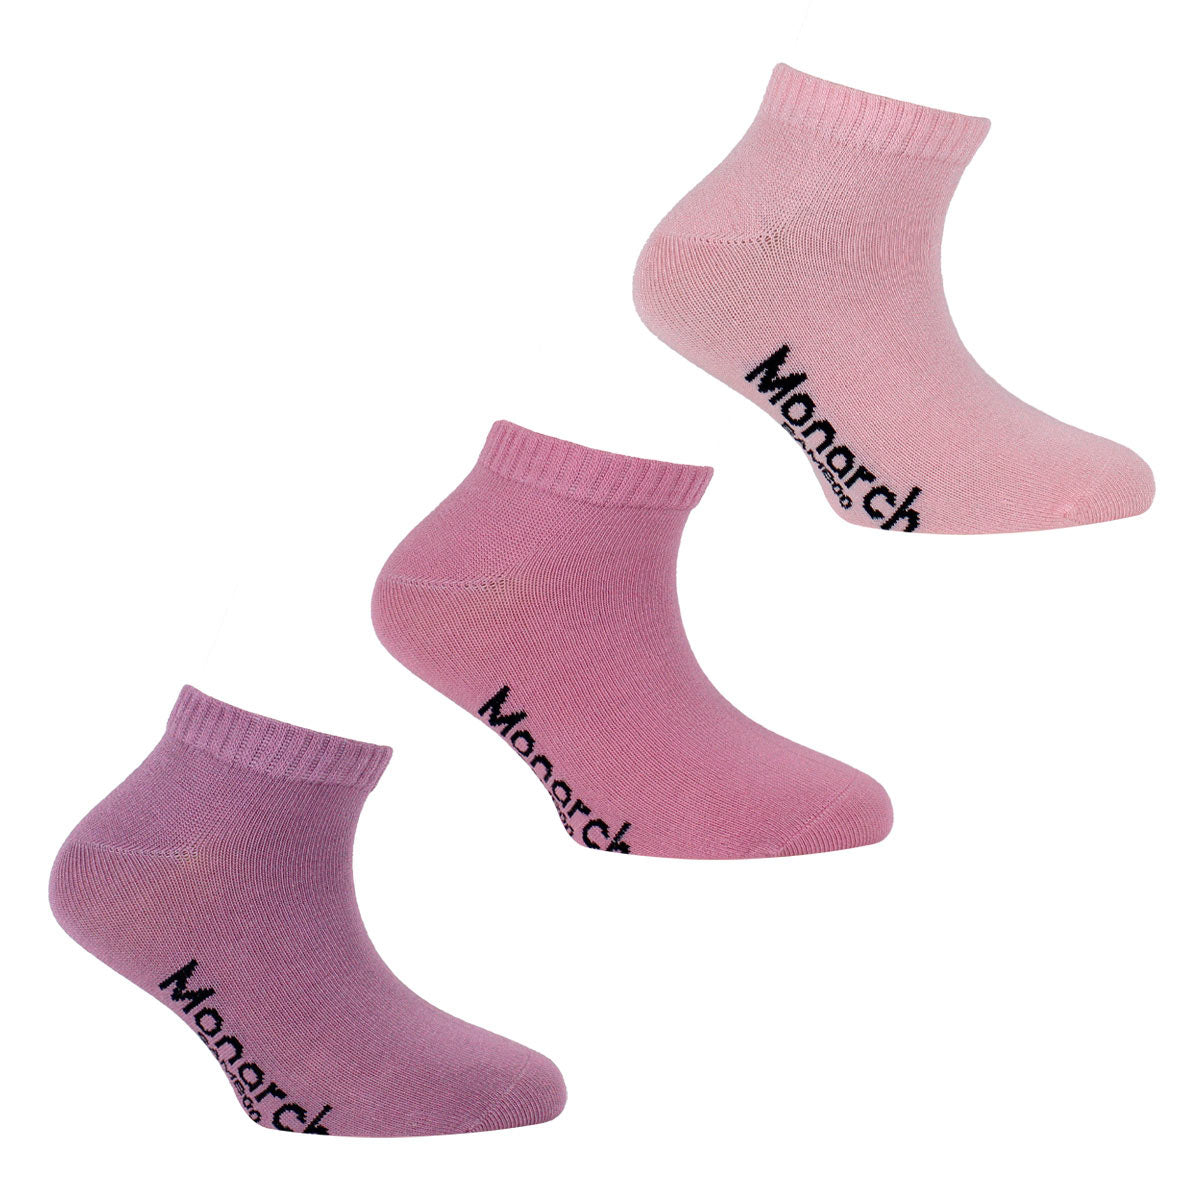 Calcetines deportivos lilas de mujer